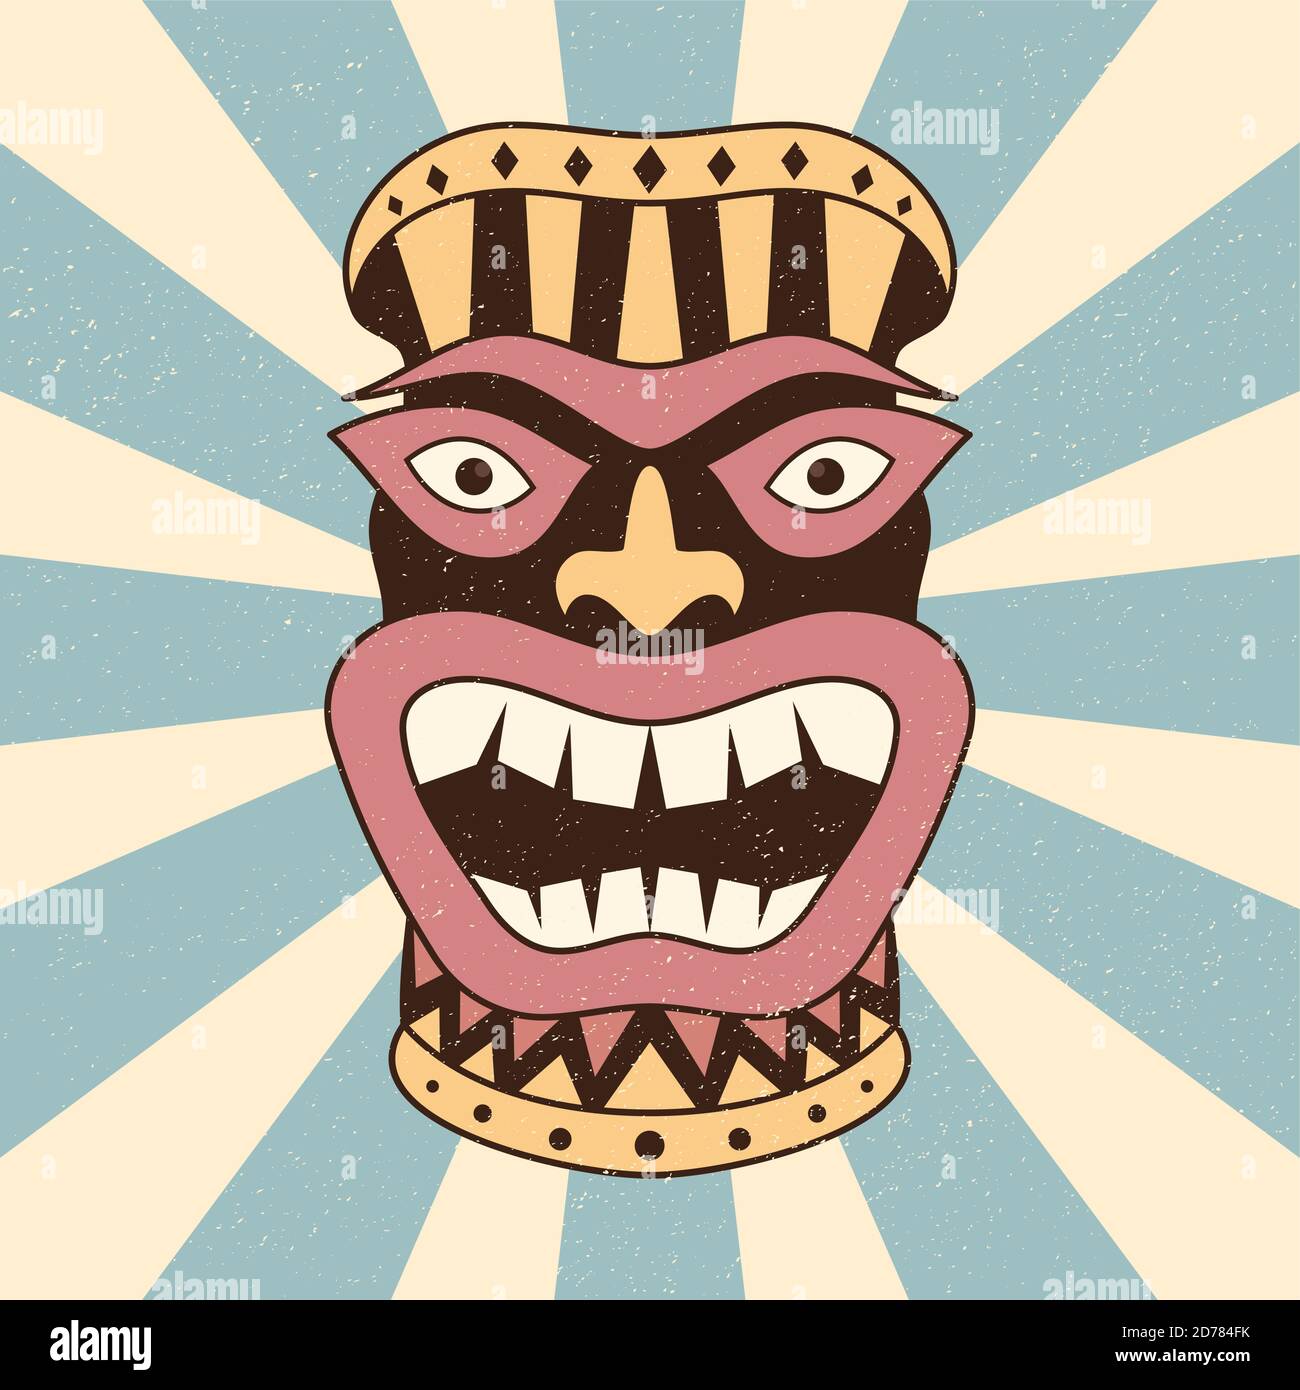 Abstrait ethnique masque vecteur concept conception couleur fond. Illustration du symbole aborigène traditionnel masqué. Illustration vectorielle EPS.8 EPS.10 Illustration de Vecteur